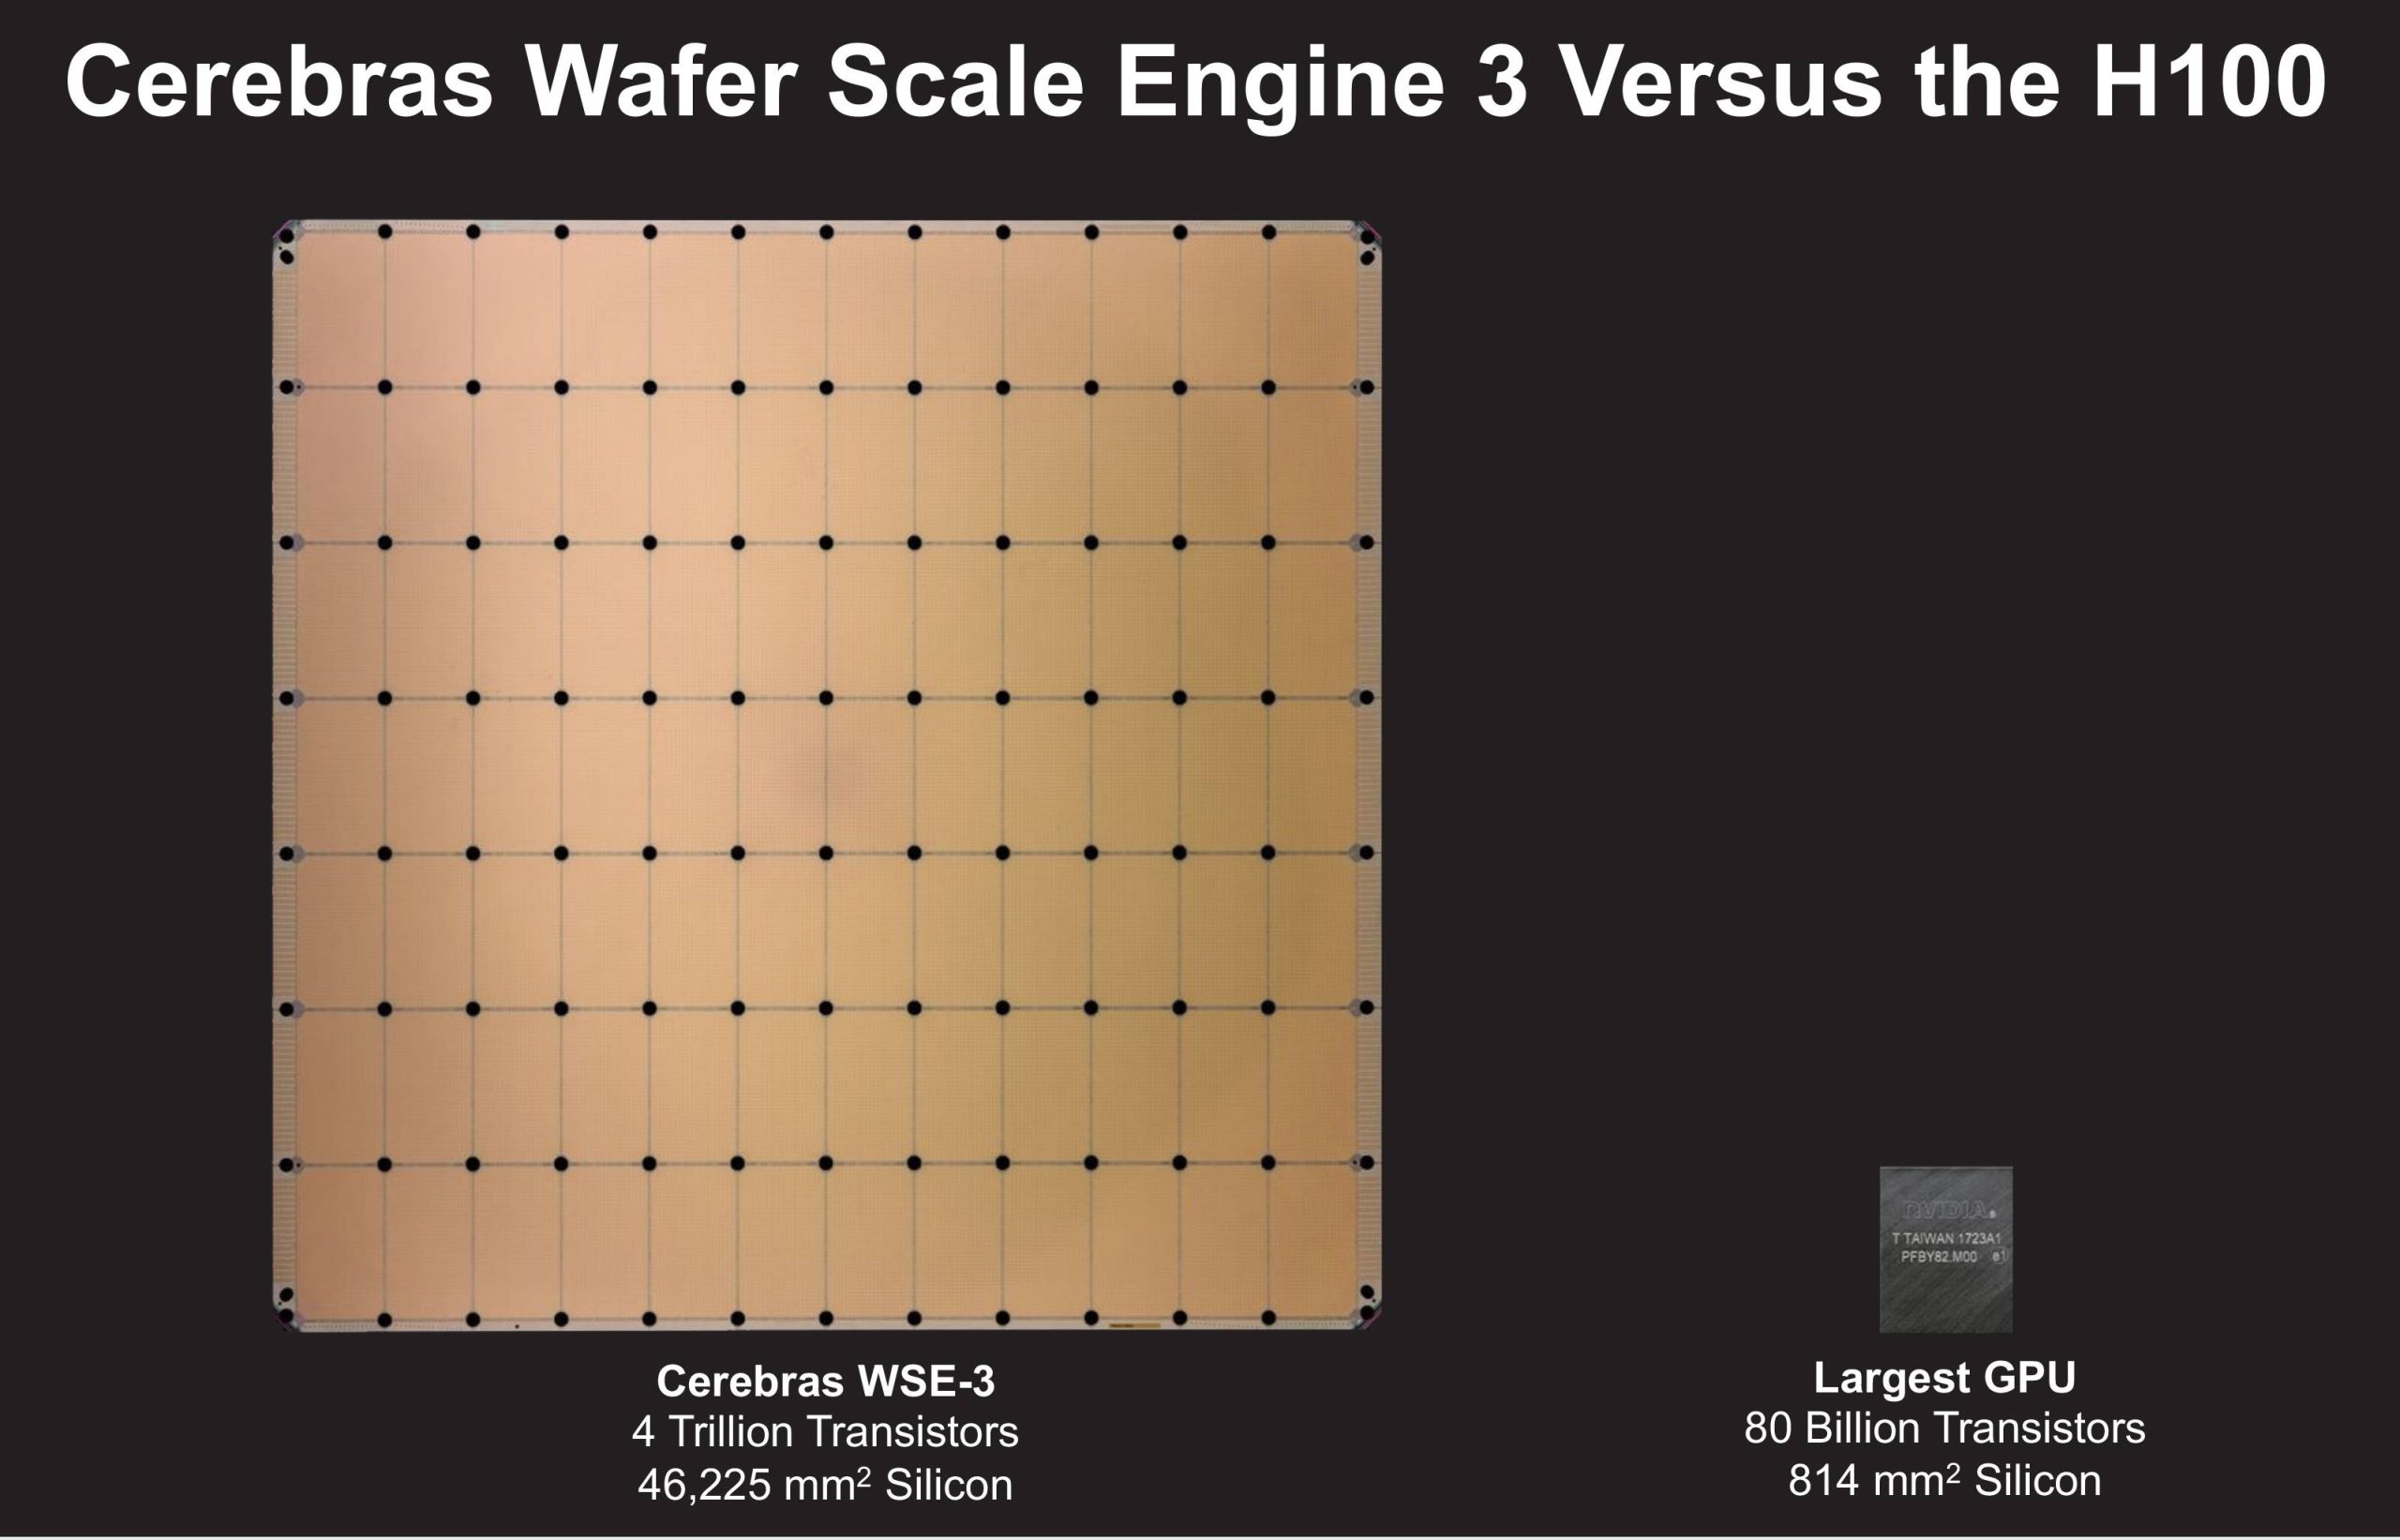 Cerebras WSE-3 compared with NVIDIA H100 GPU